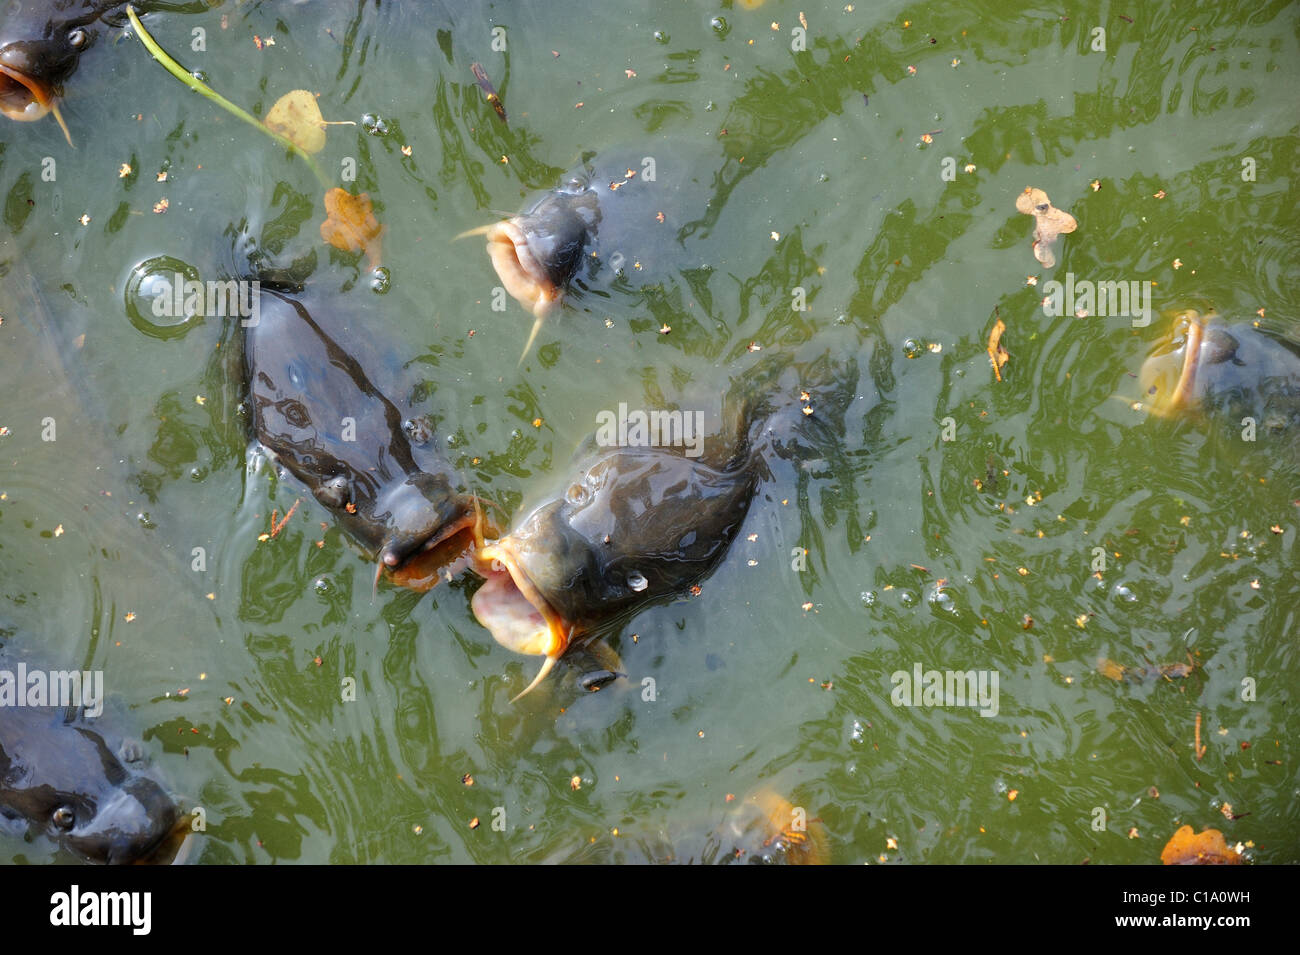 Banc de carpe commune (Cyprinus carpio) de venir à la surface pour l'air dans l'étang du parc, Belgique Banque D'Images